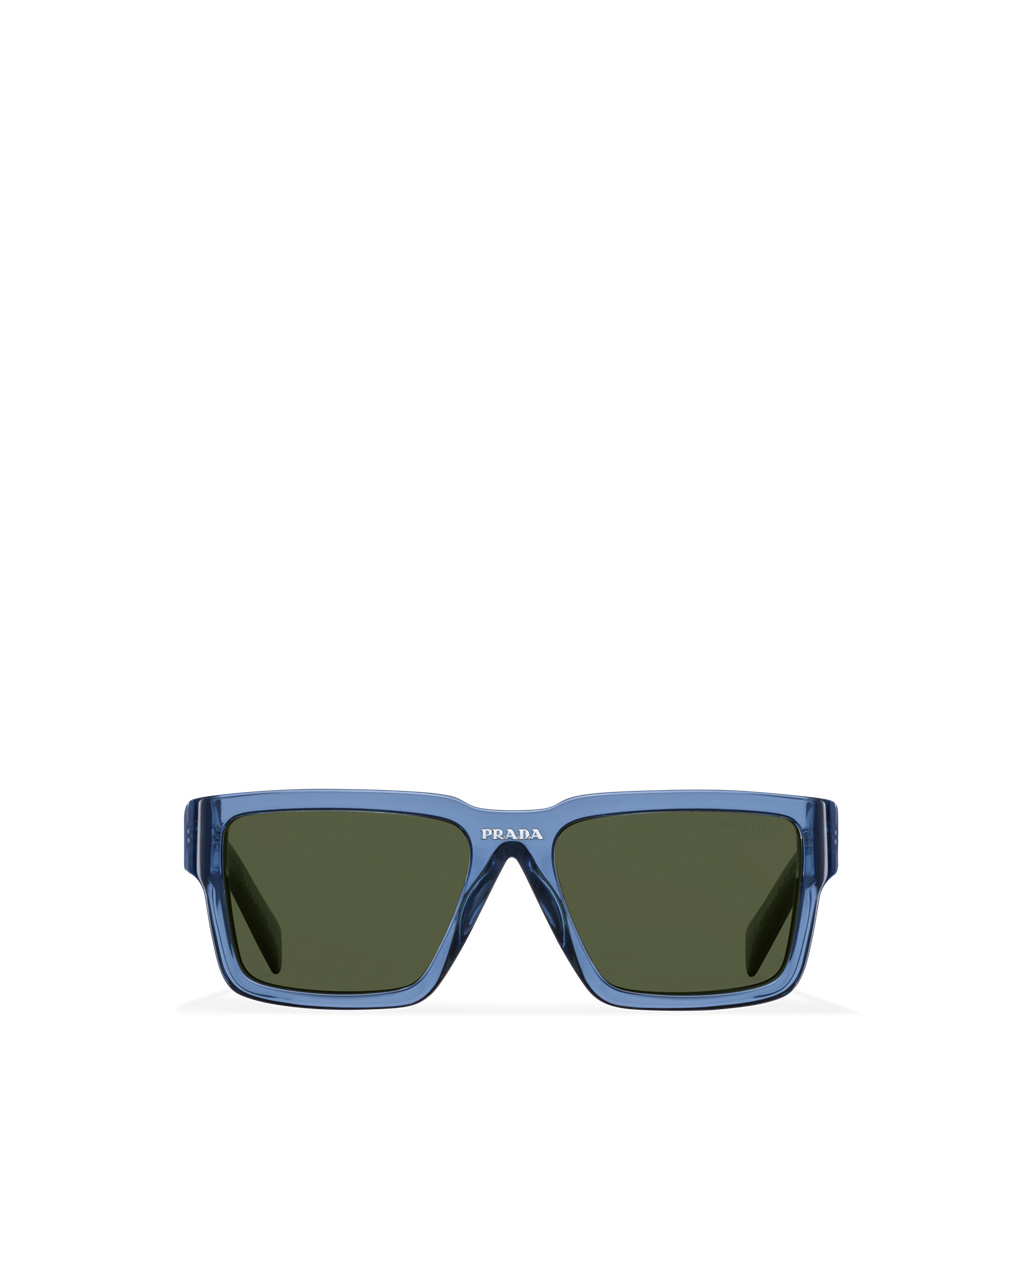 Amazon.com: Prada Blue Rectangular Men's Sunglasses PR 25ZS U430A9 56 :  Clothing, Shoes & Jewelry